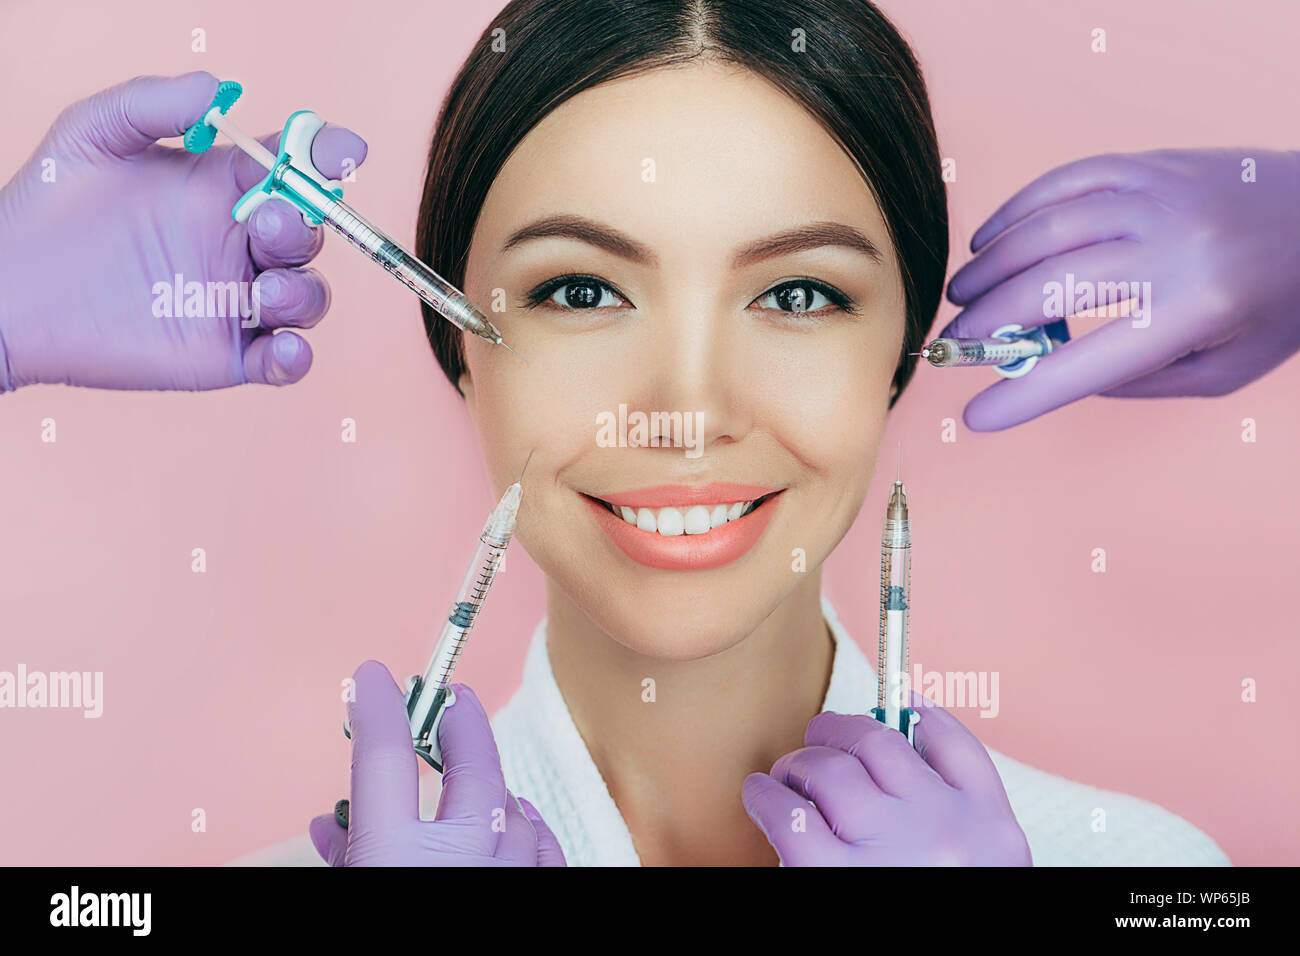 Donna asiatica pubblicità concetto di ringiovanimento cutaneo mediante iniezione di bellezza su sfondo rosa. sacco di siringhe intorno a un volto femminile. non-chirurgico Foto Stock